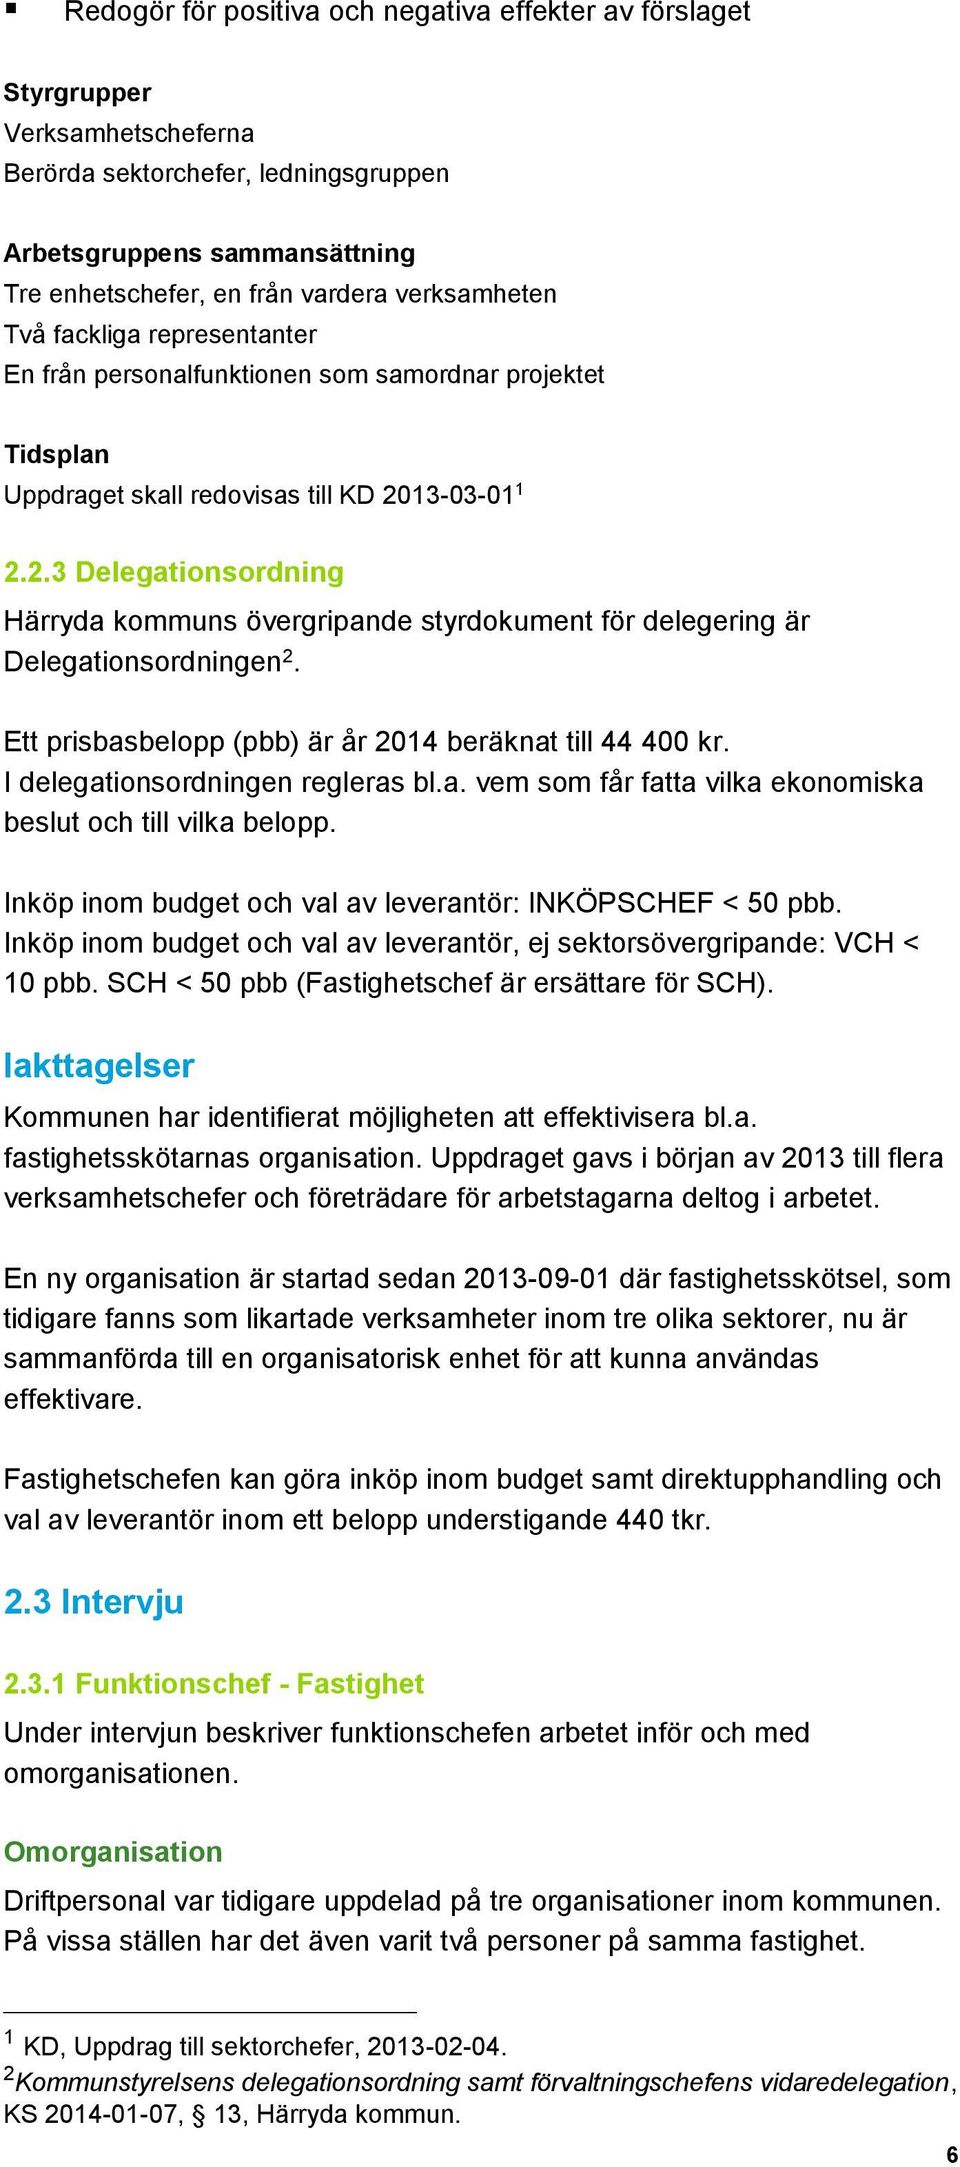 13-03-01 1 2.2.3 Delegationsordning Härryda kommuns övergripande styrdokument för delegering är Delegationsordningen 2. Ett prisbasbelopp (pbb) är år 2014 beräknat till 44 400 kr.